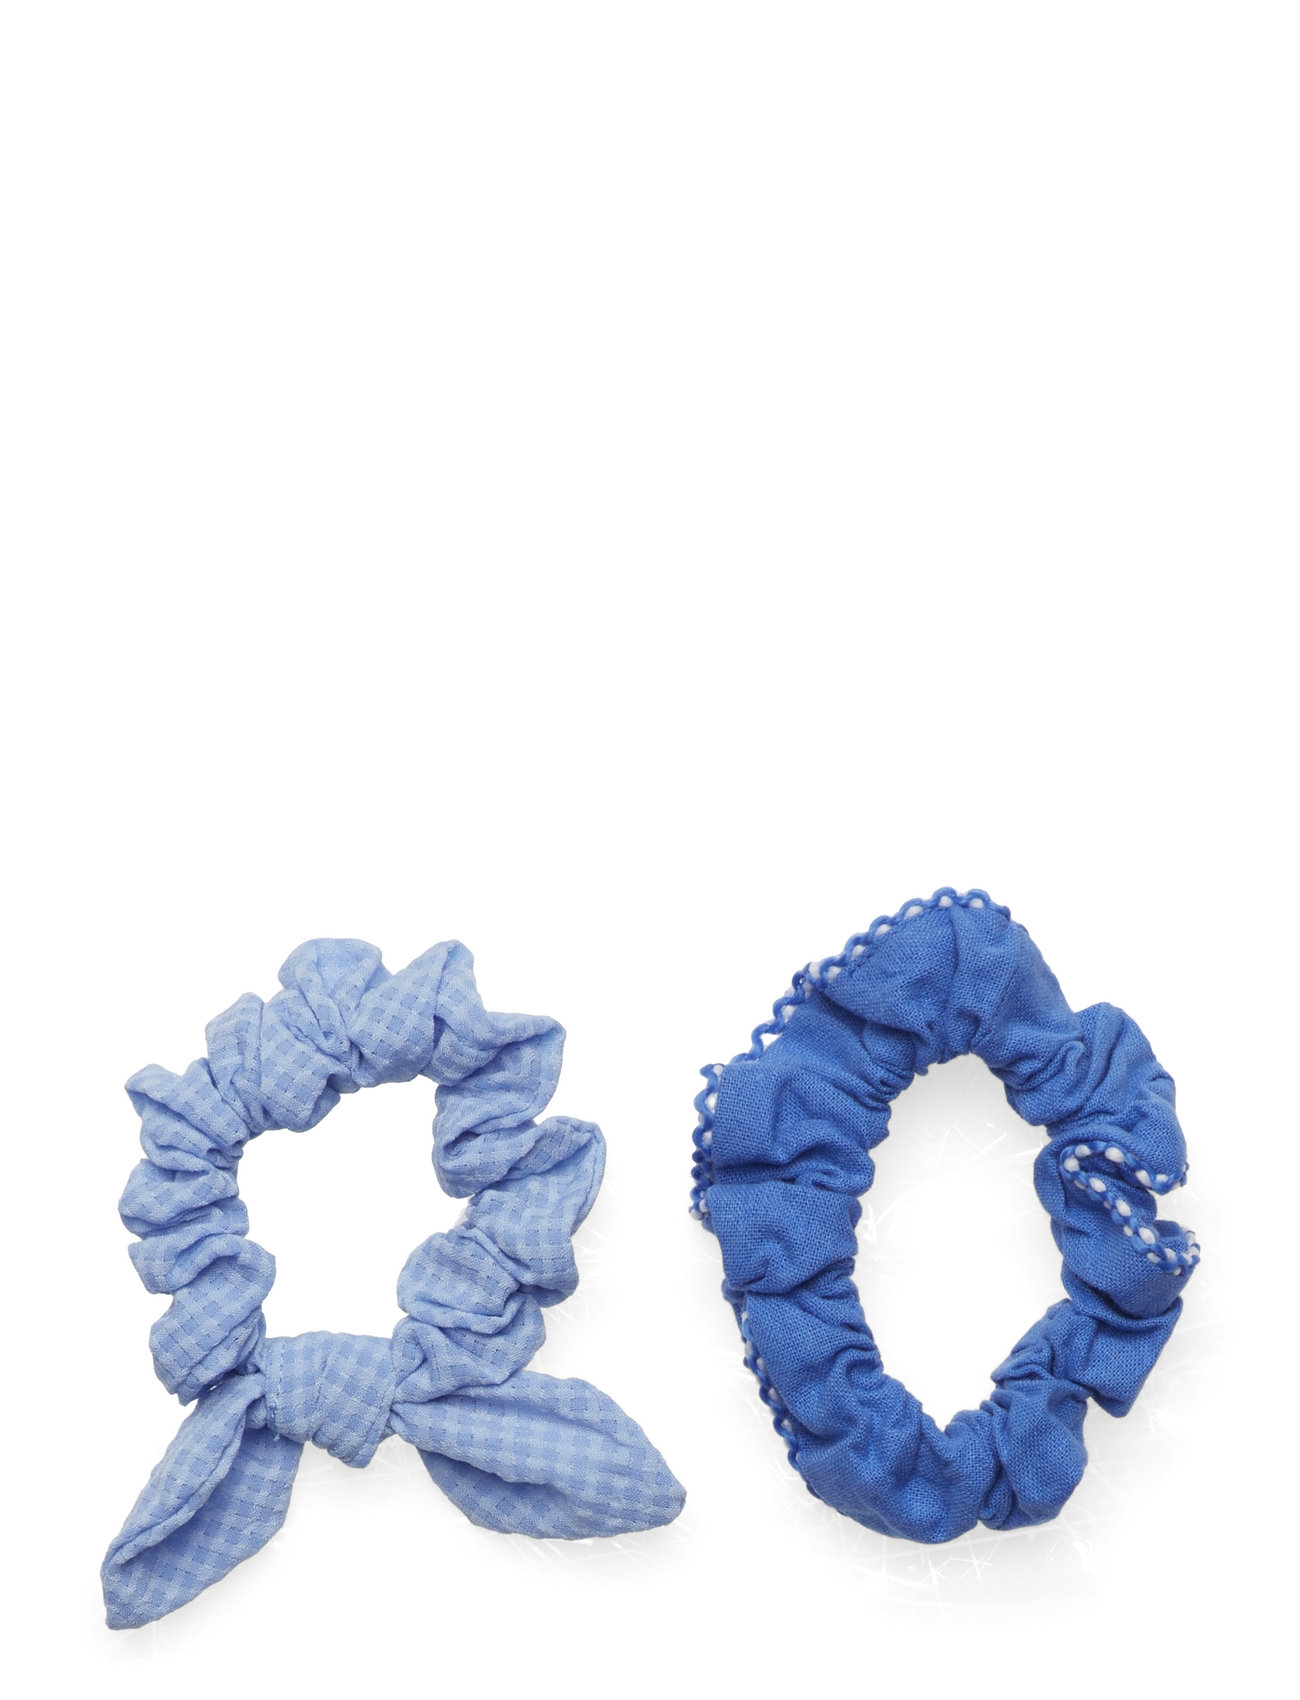 2 Hair Tie Pack Accessories Hair Accessories Scrunchies Blue Mango